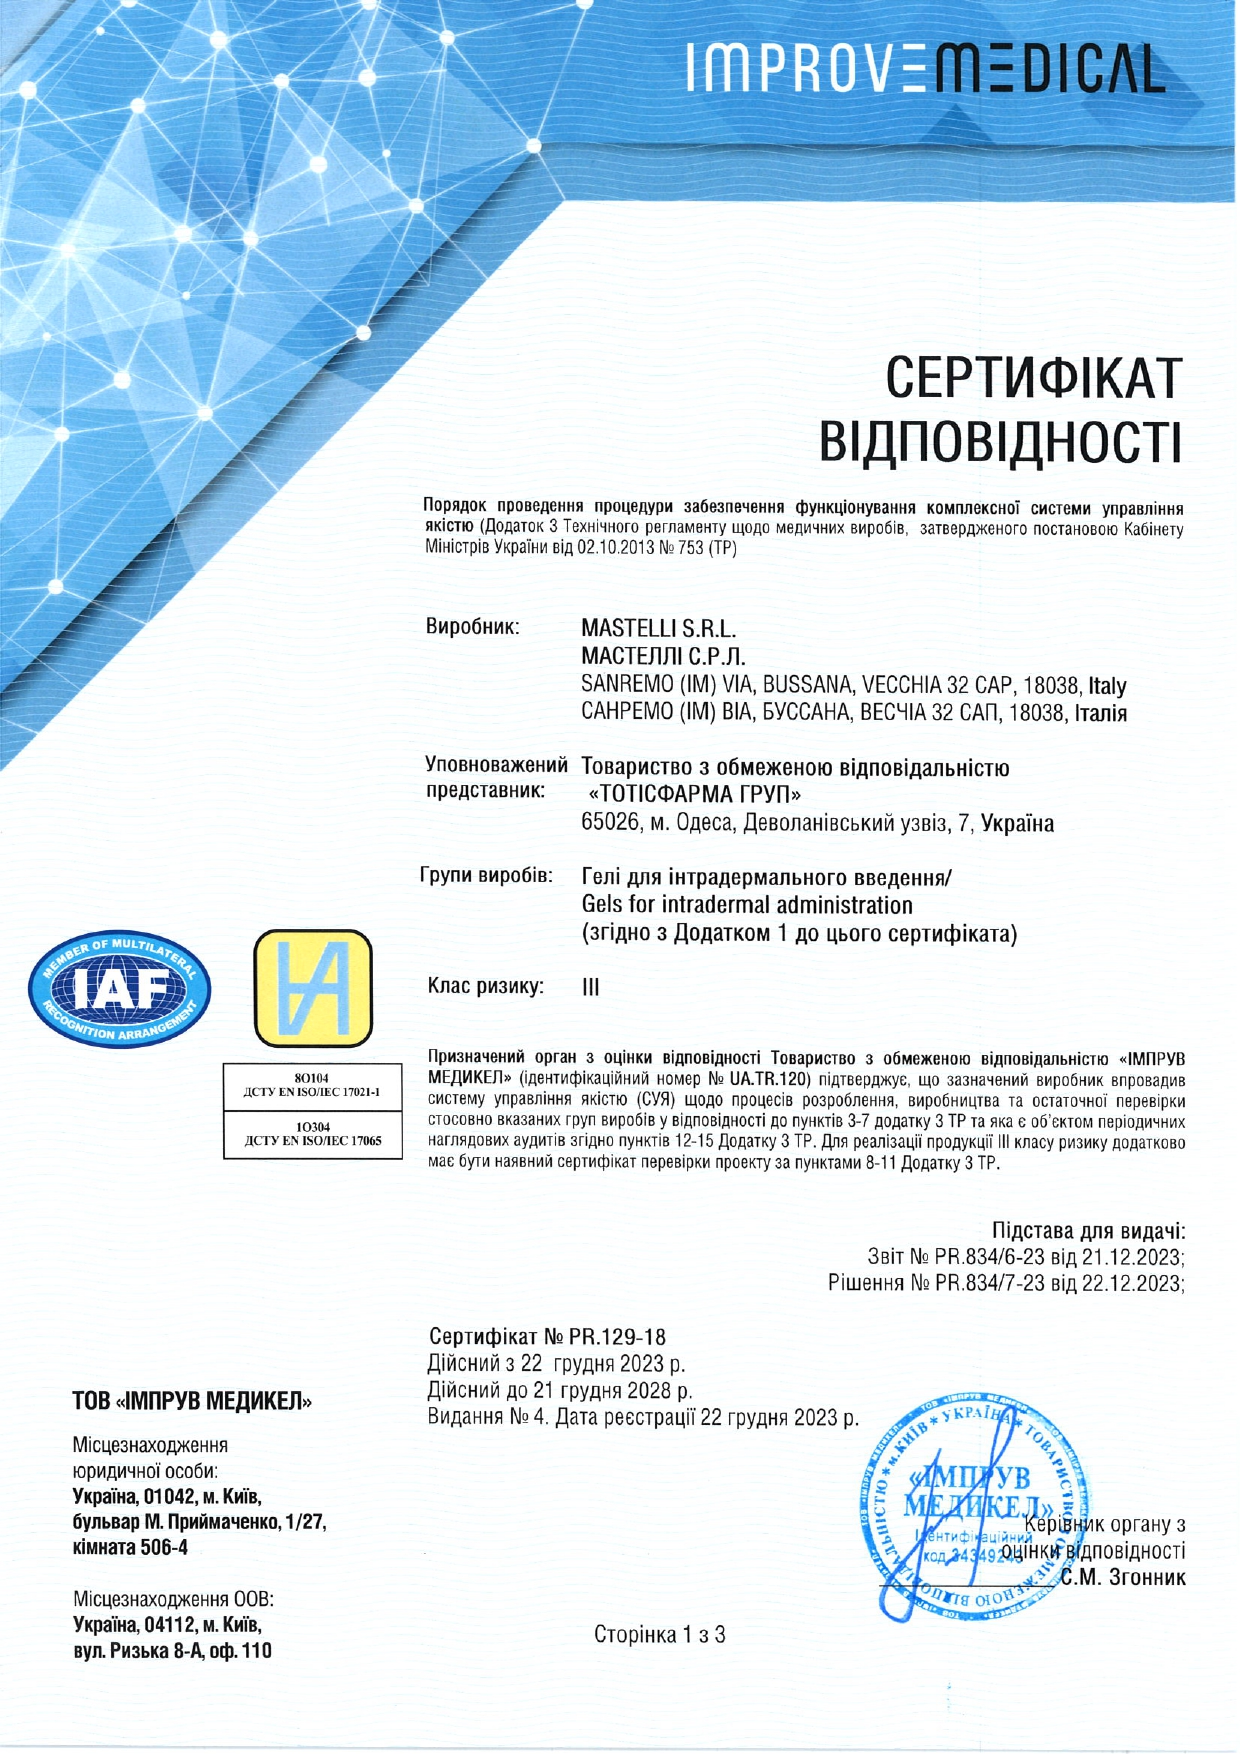 Сертификат препаратов Mastelli - изображение 1